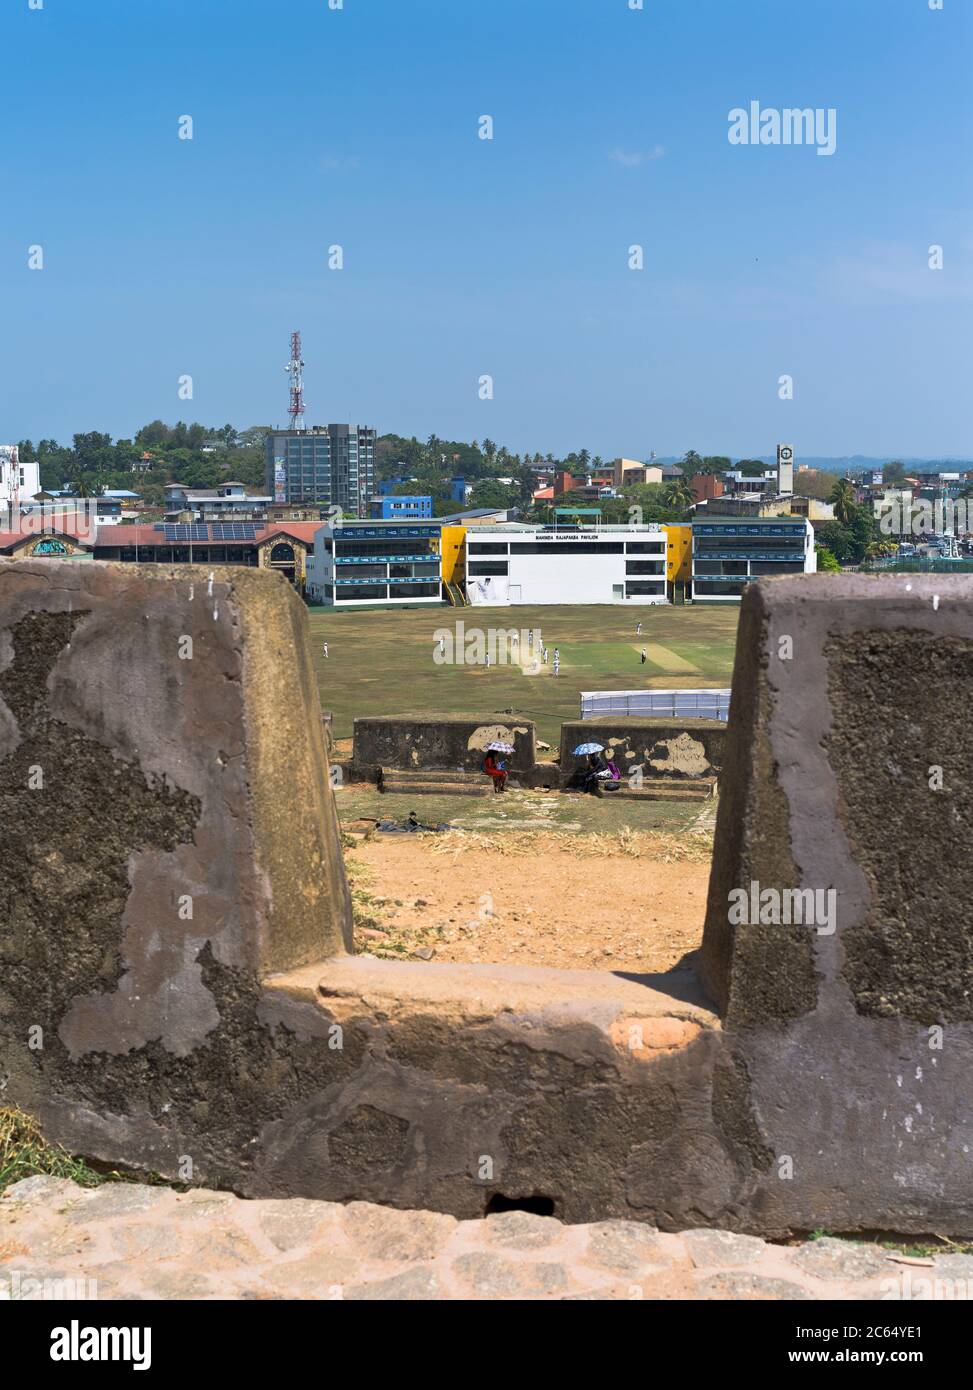 dh Galle Cricket Club Ground GALLE FORT SRI LANKA Niederländisch Festungswälle Waffe Emplacement über schauenden Grillen Sri lanka Stadion Übereinstimmung Stockfoto